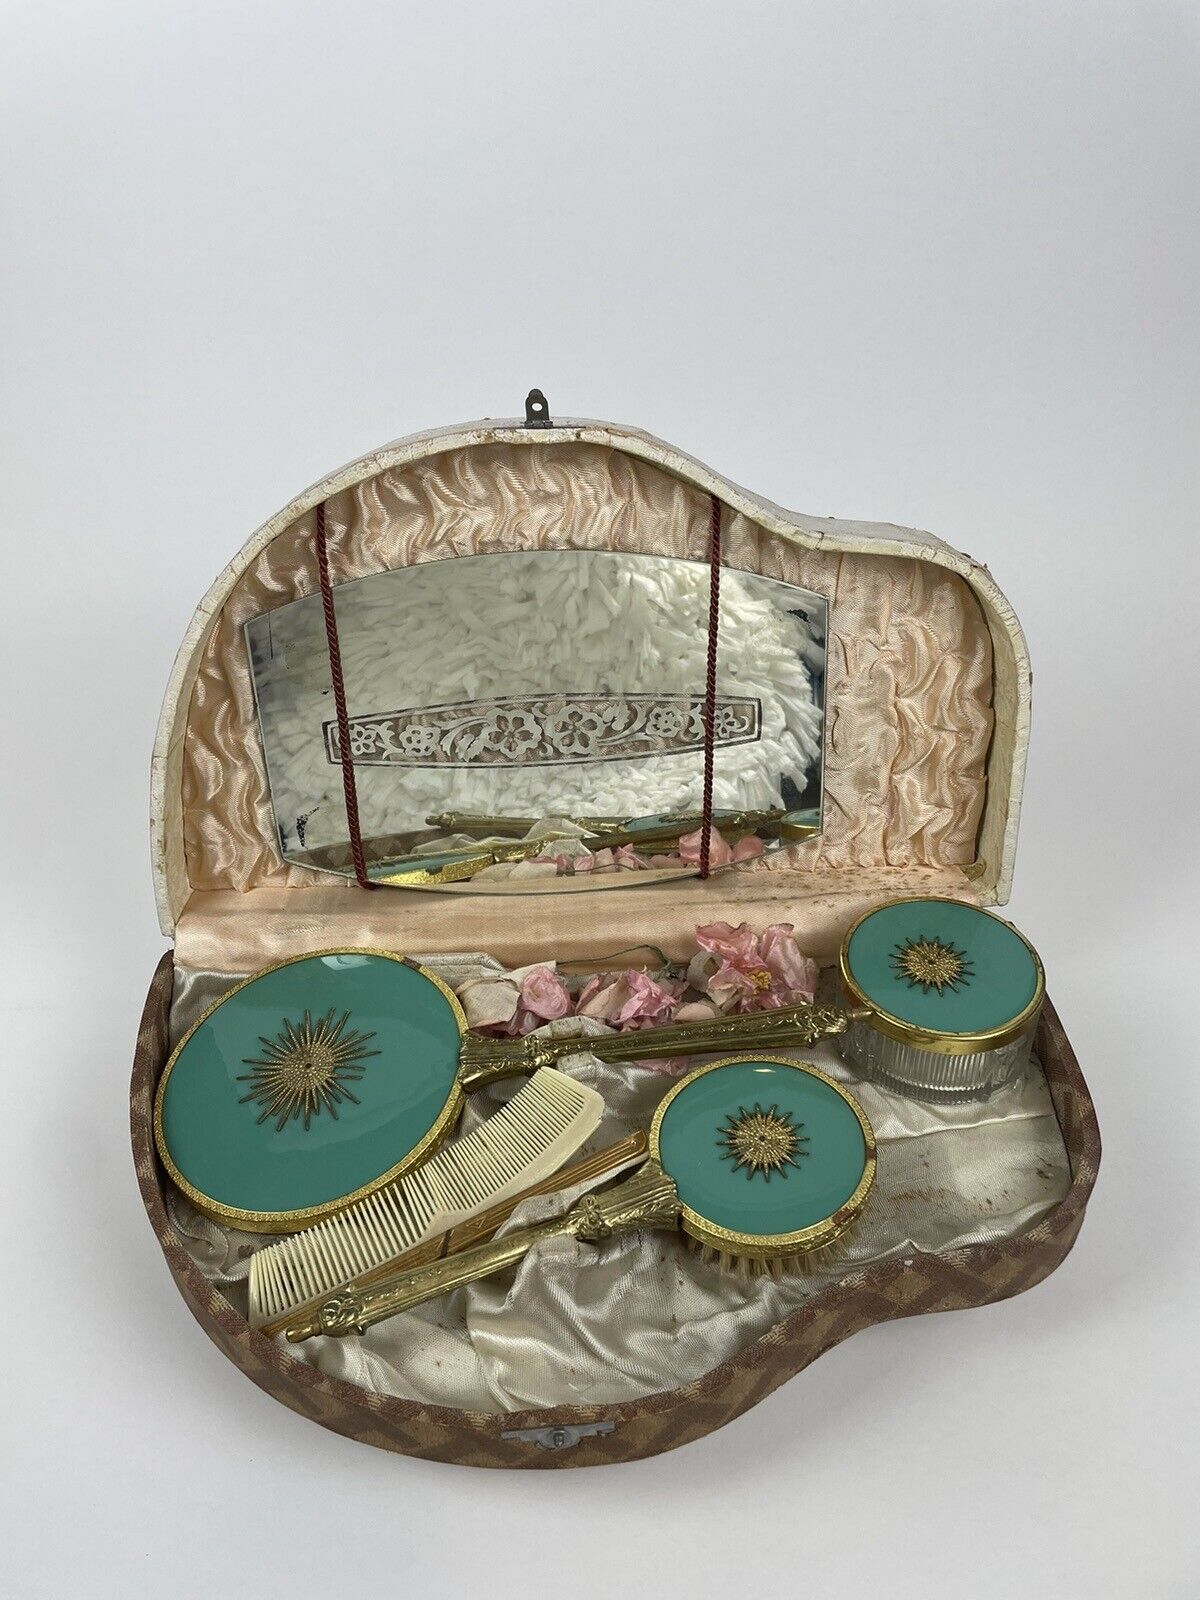 TEAL Sunburst Gold/Brass Handle Vanity Dresser Set With Original Box Vintage